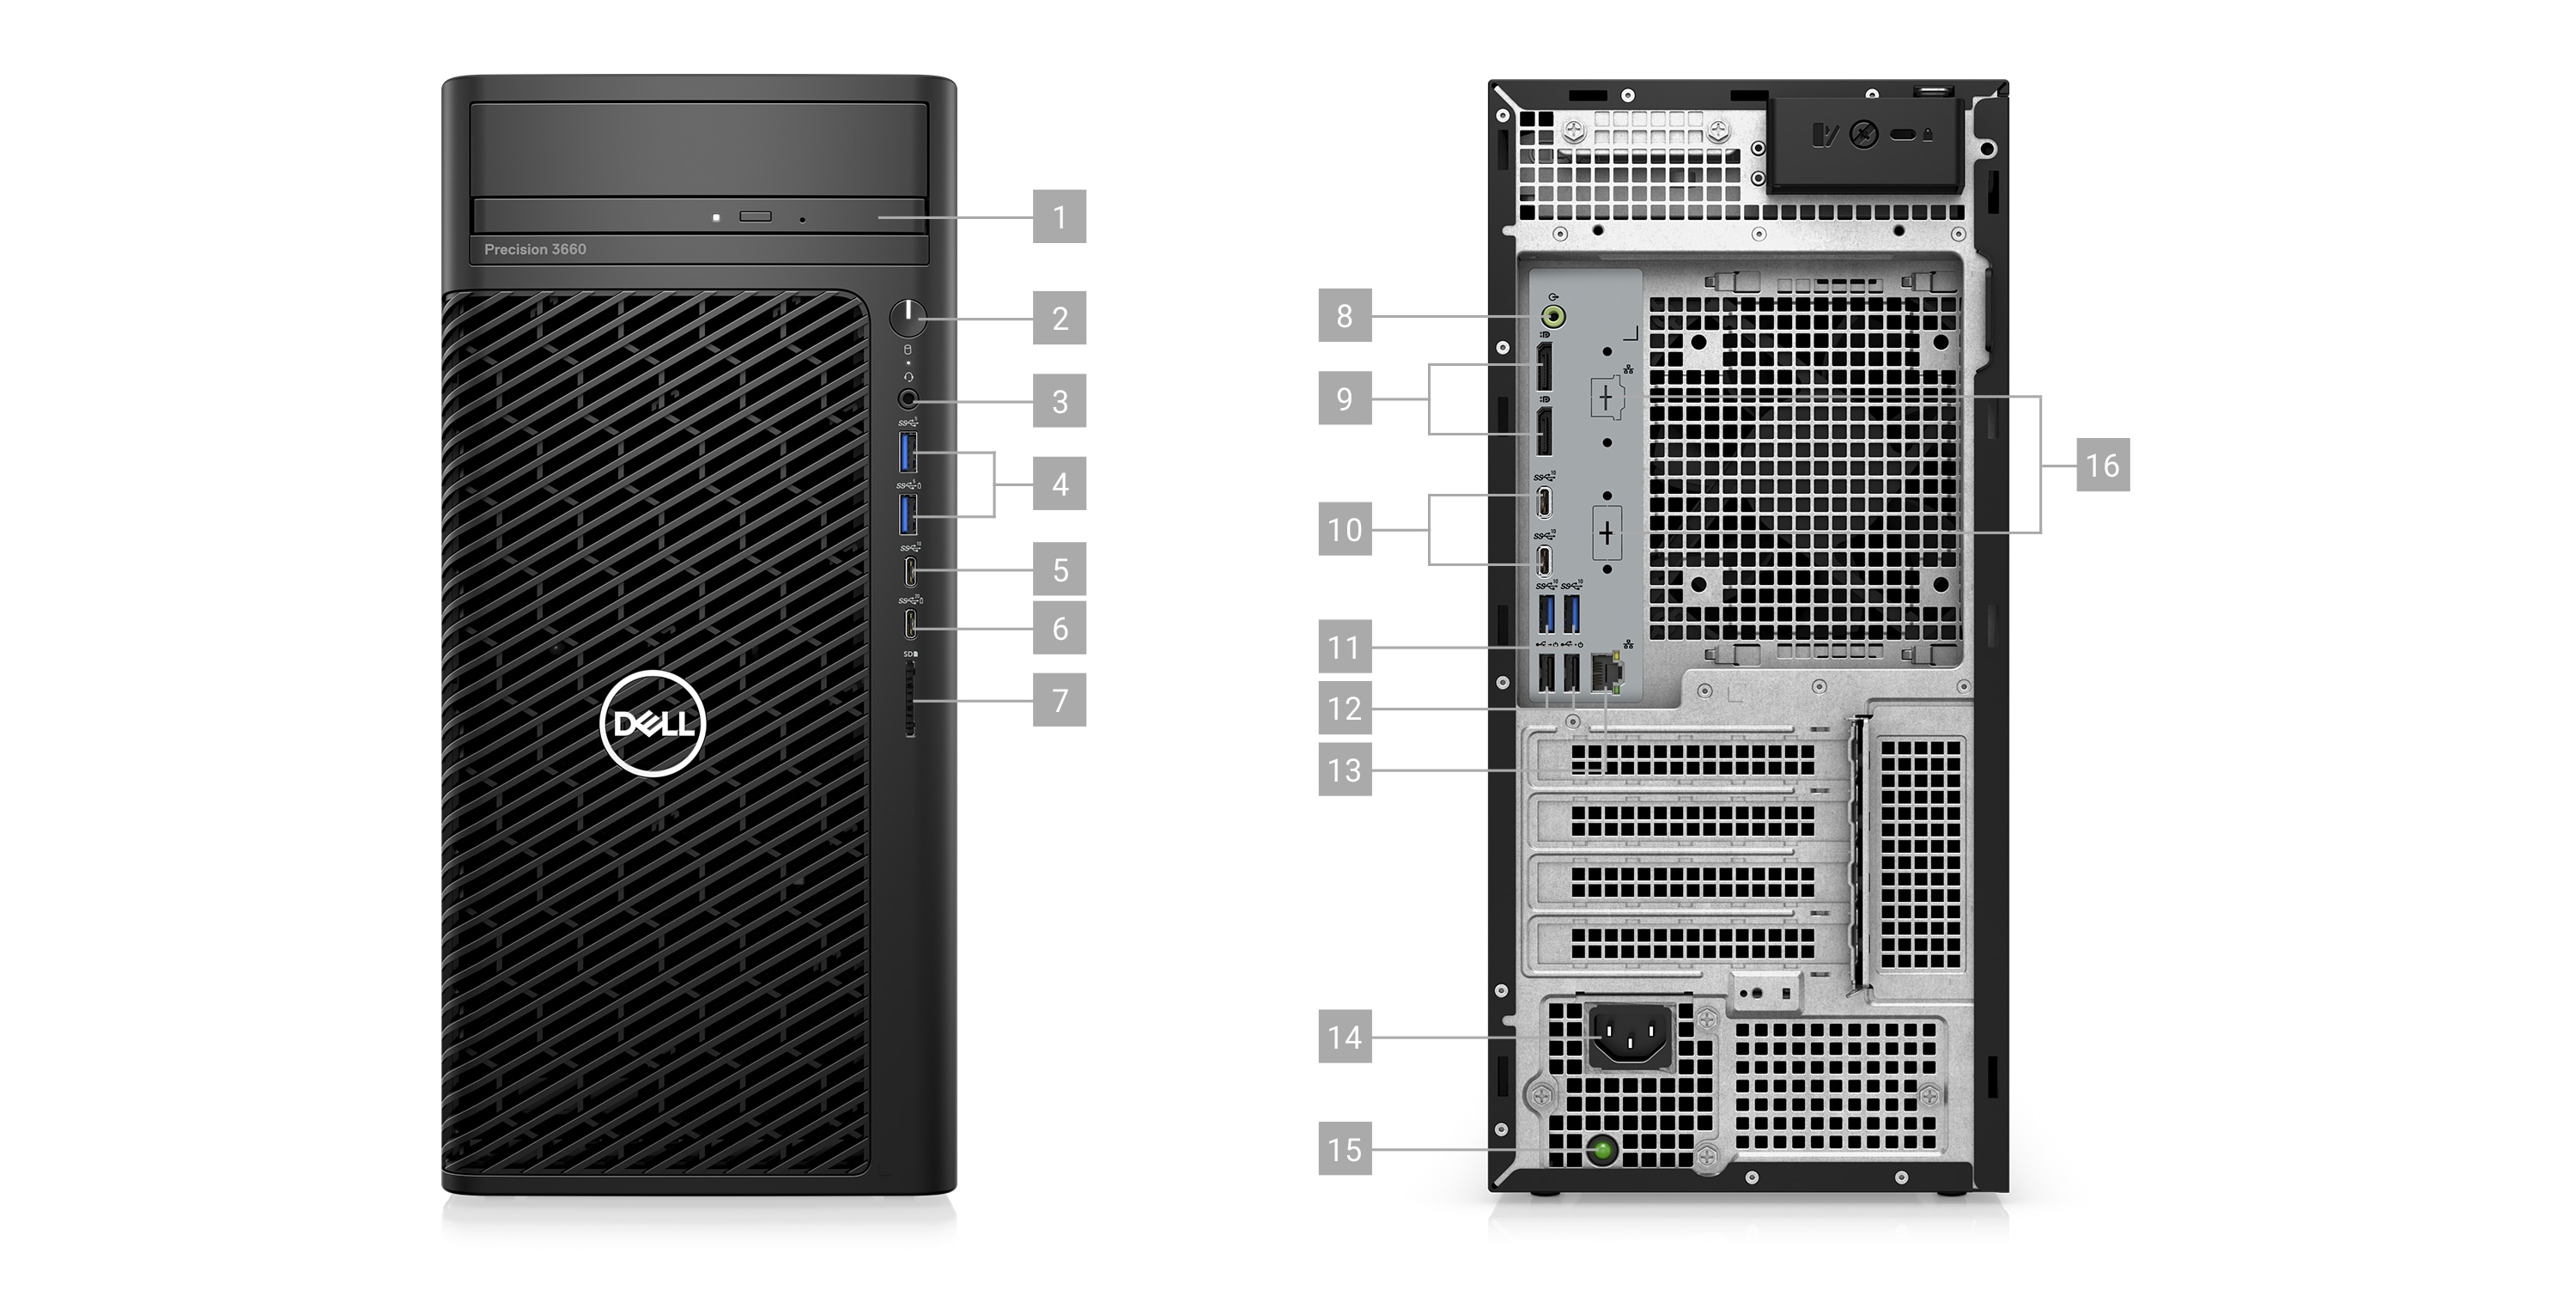 Image de deux stations de travail fixes Dell Precision 3660 auxquelles les numéros 1 à 16 ont été ajoutés pour indiquer les ports et logements du produit.